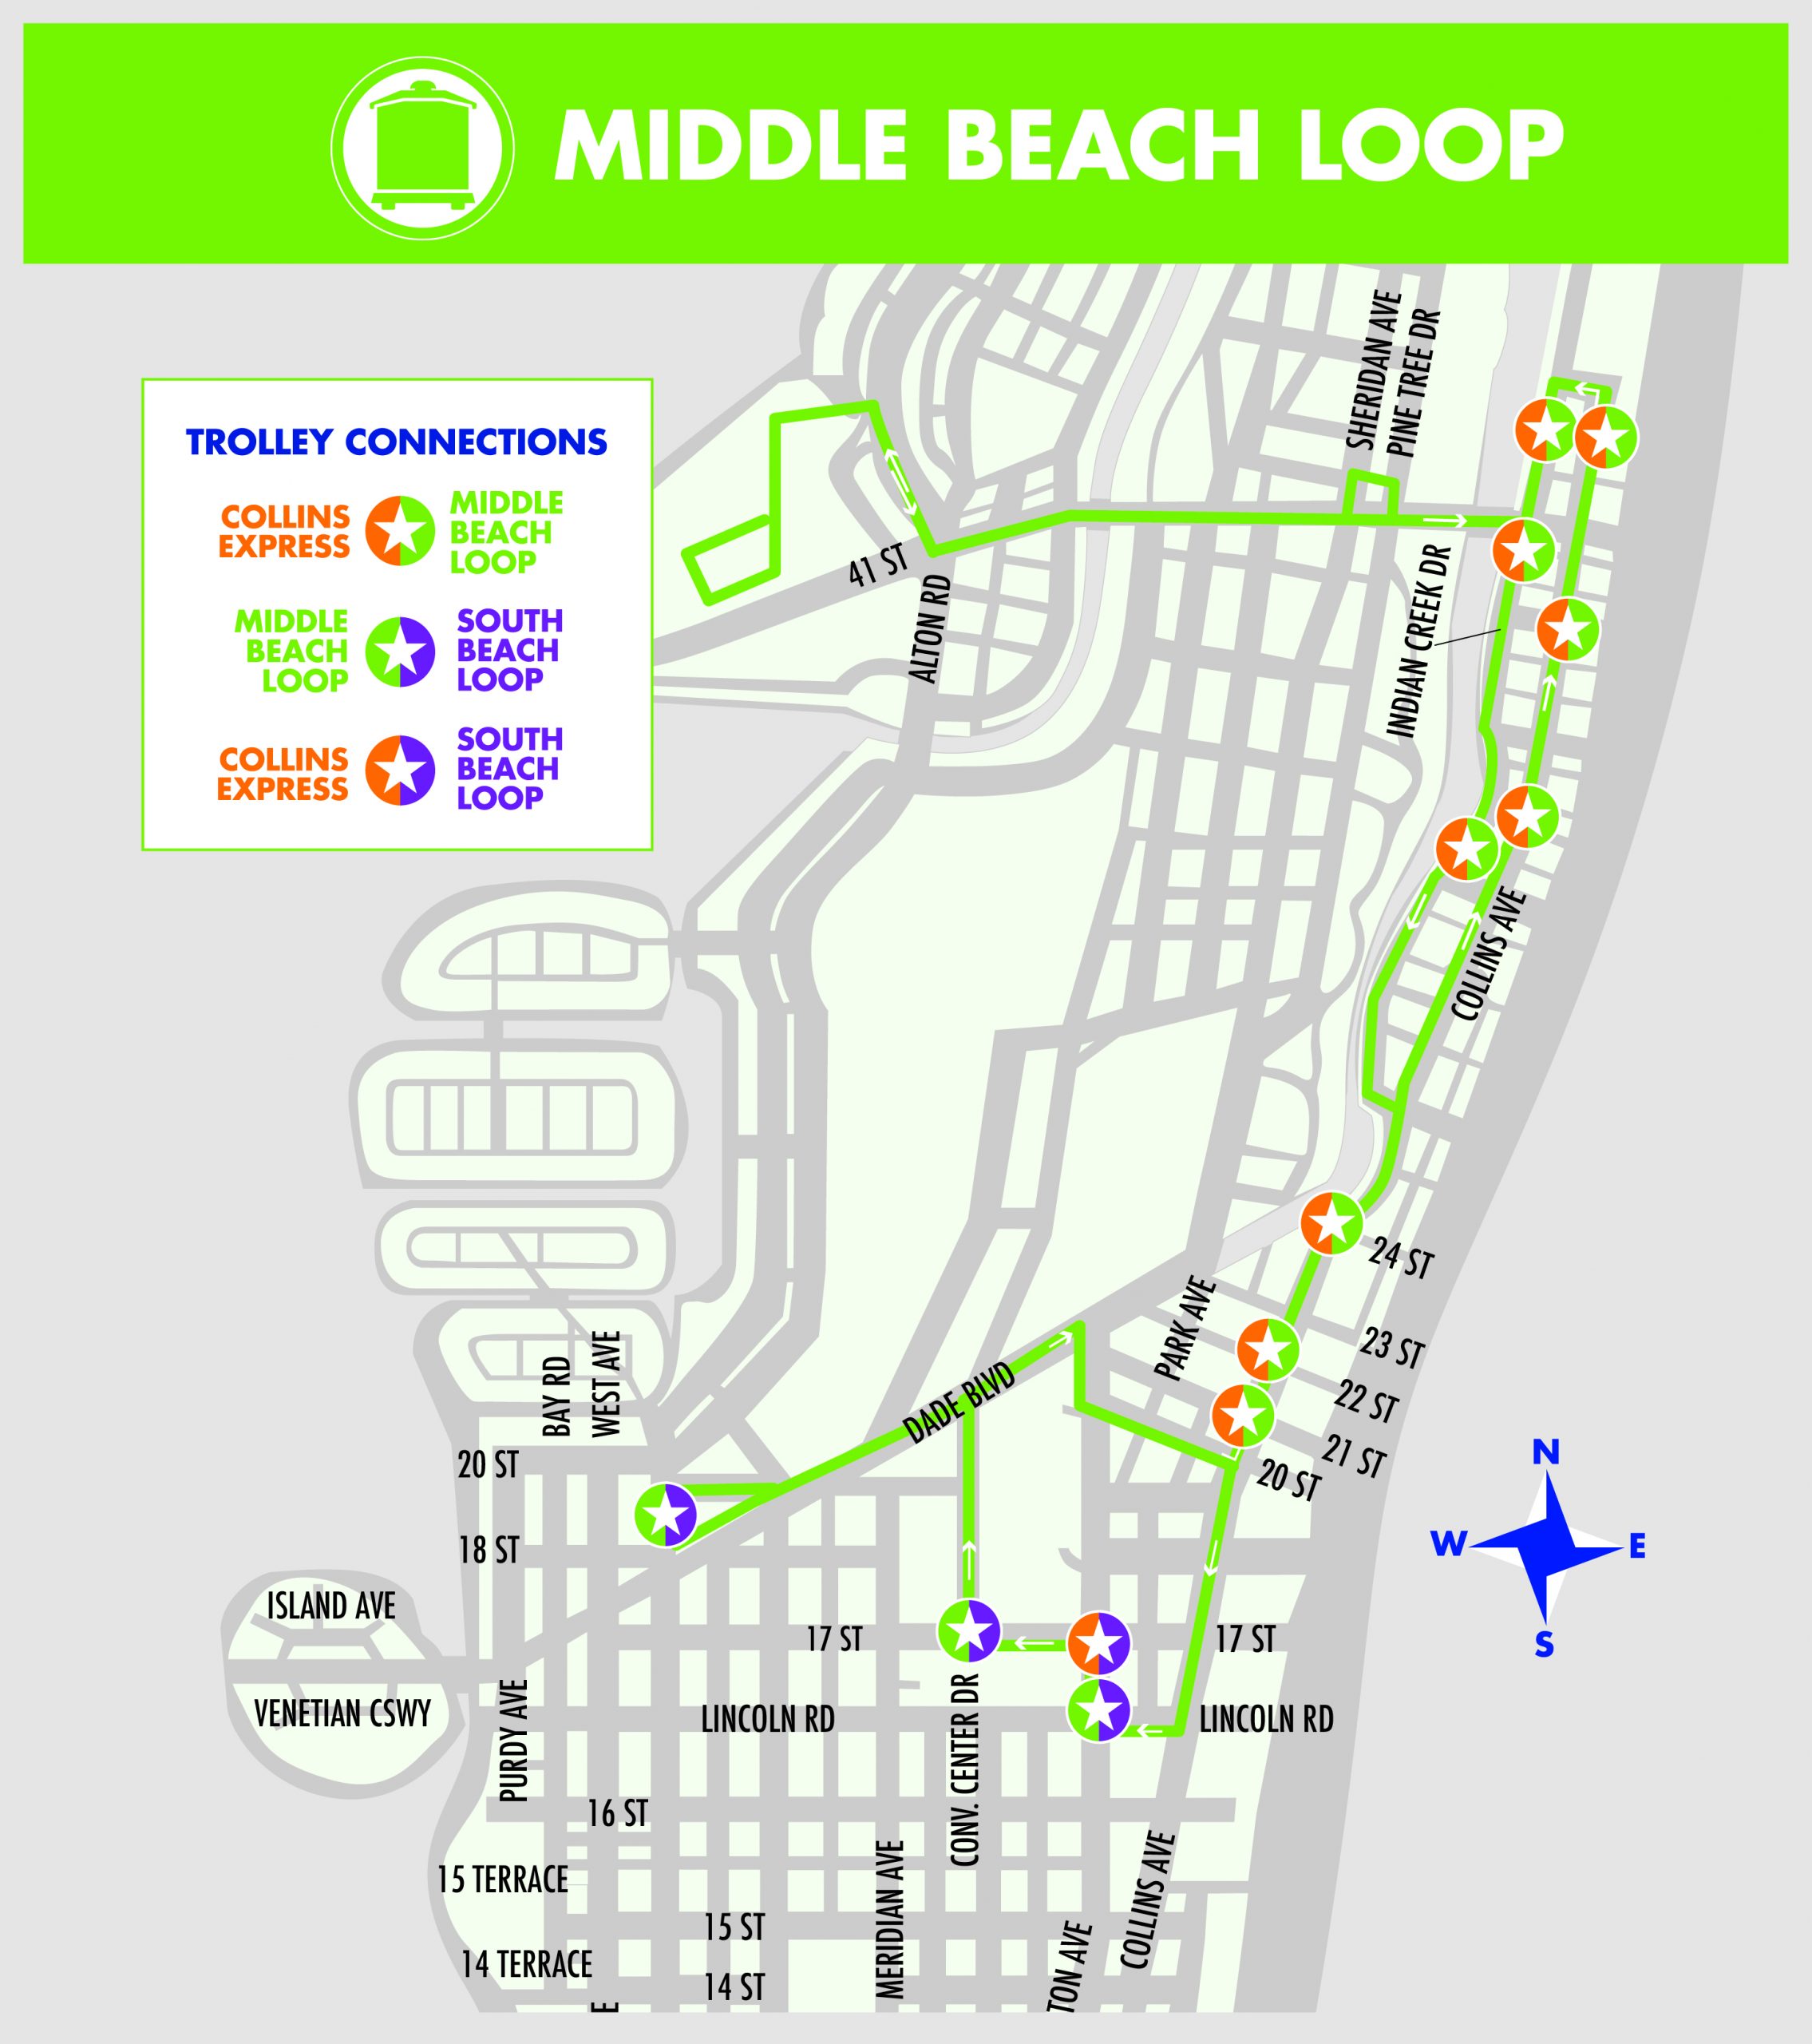 Middle Beach Loop Map